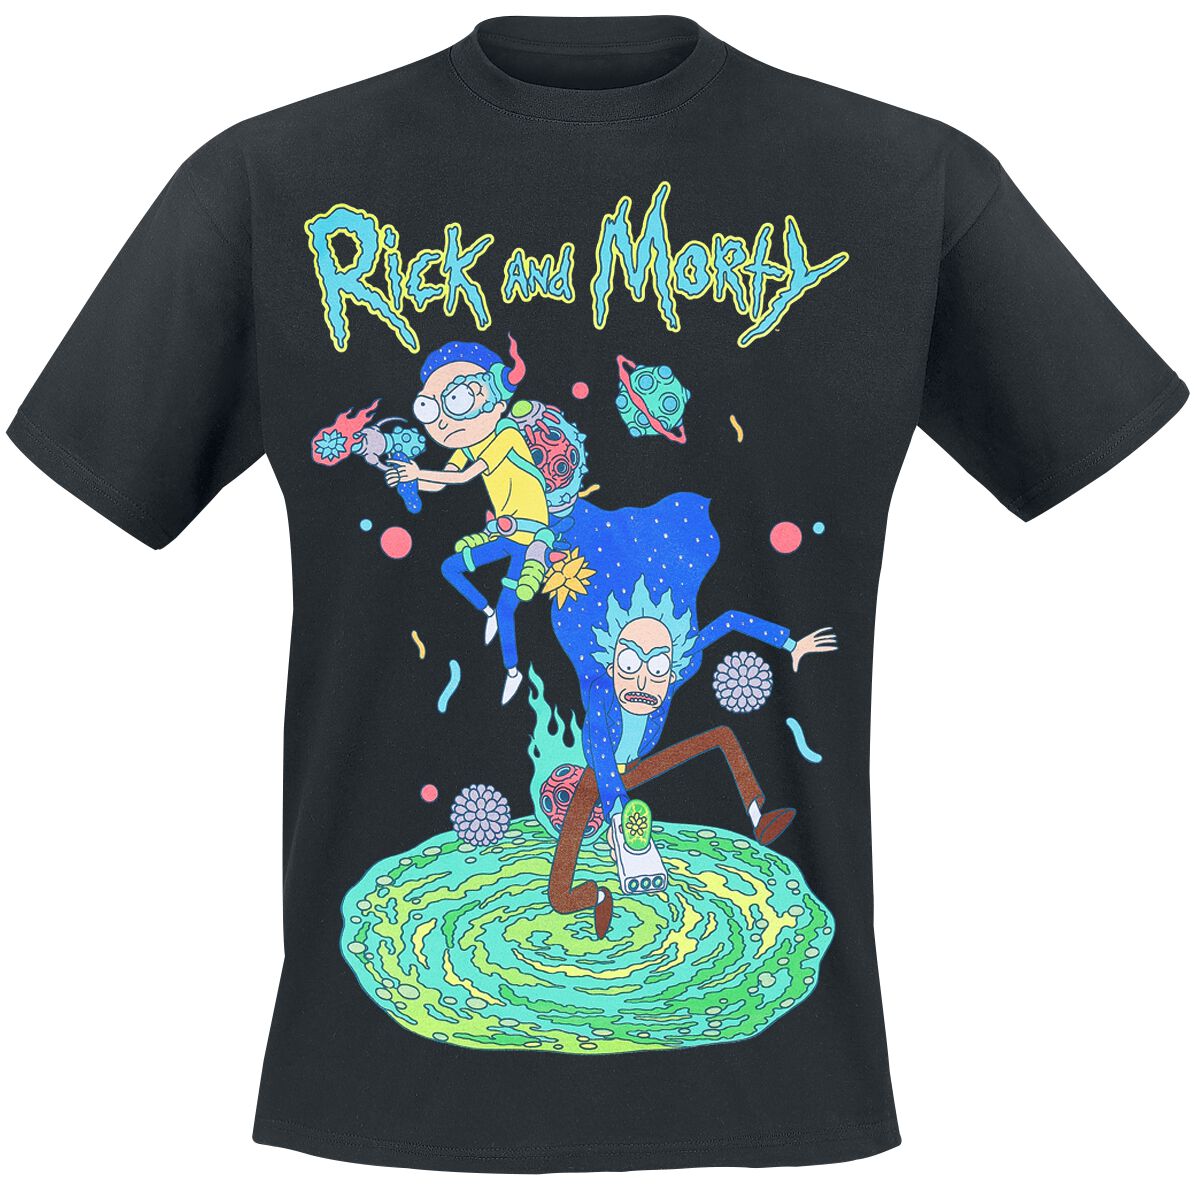 Rick And Morty T-Shirt - Space Rangers - S bis 4XL - für Männer - Größe XL - schwarz  - EMP exklusives Merchandise!